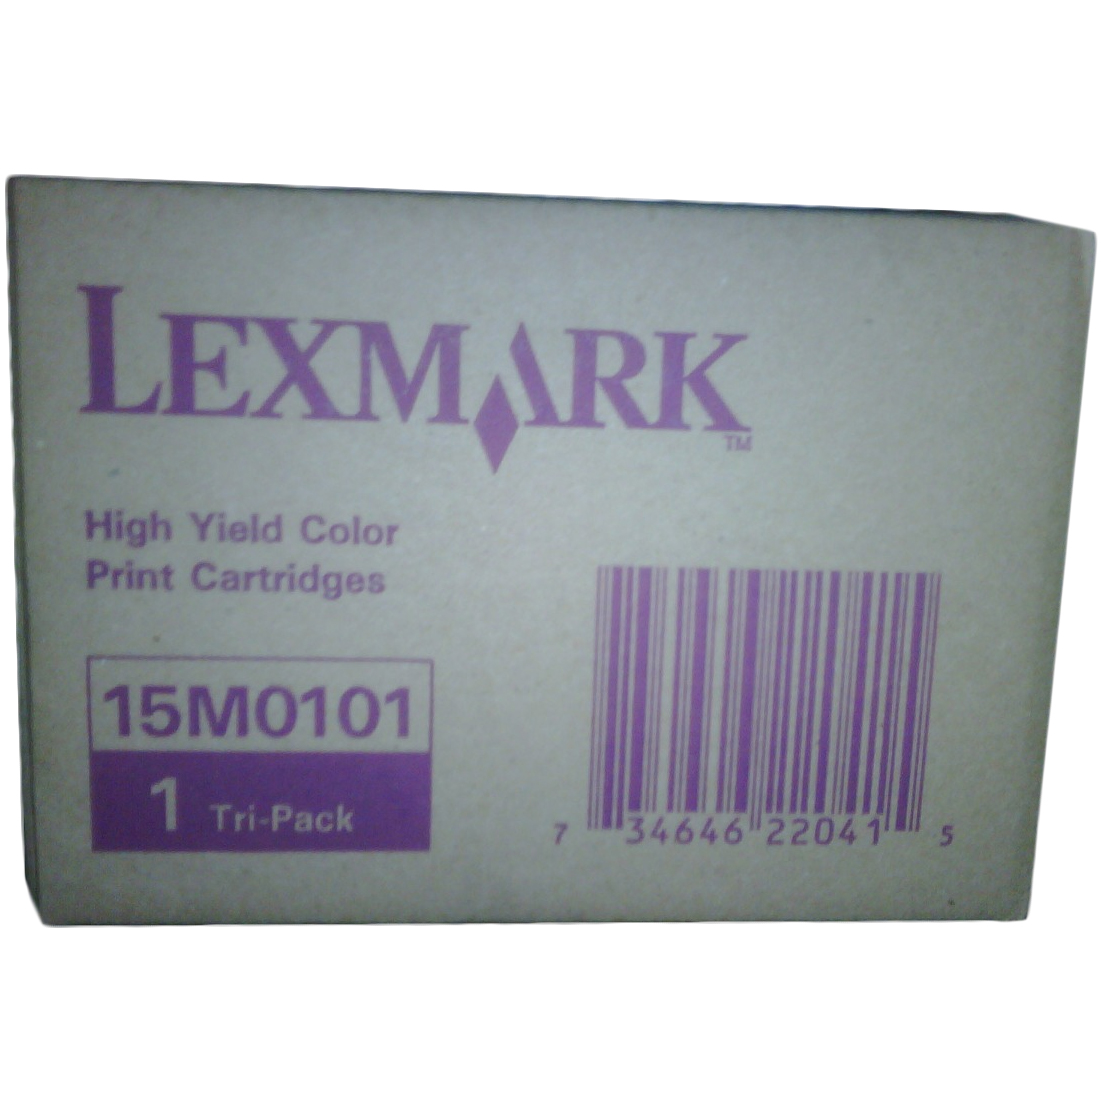 Original Lexmark 0015M0101 Colour Triple Pack Ink Cartridges (15M0101)